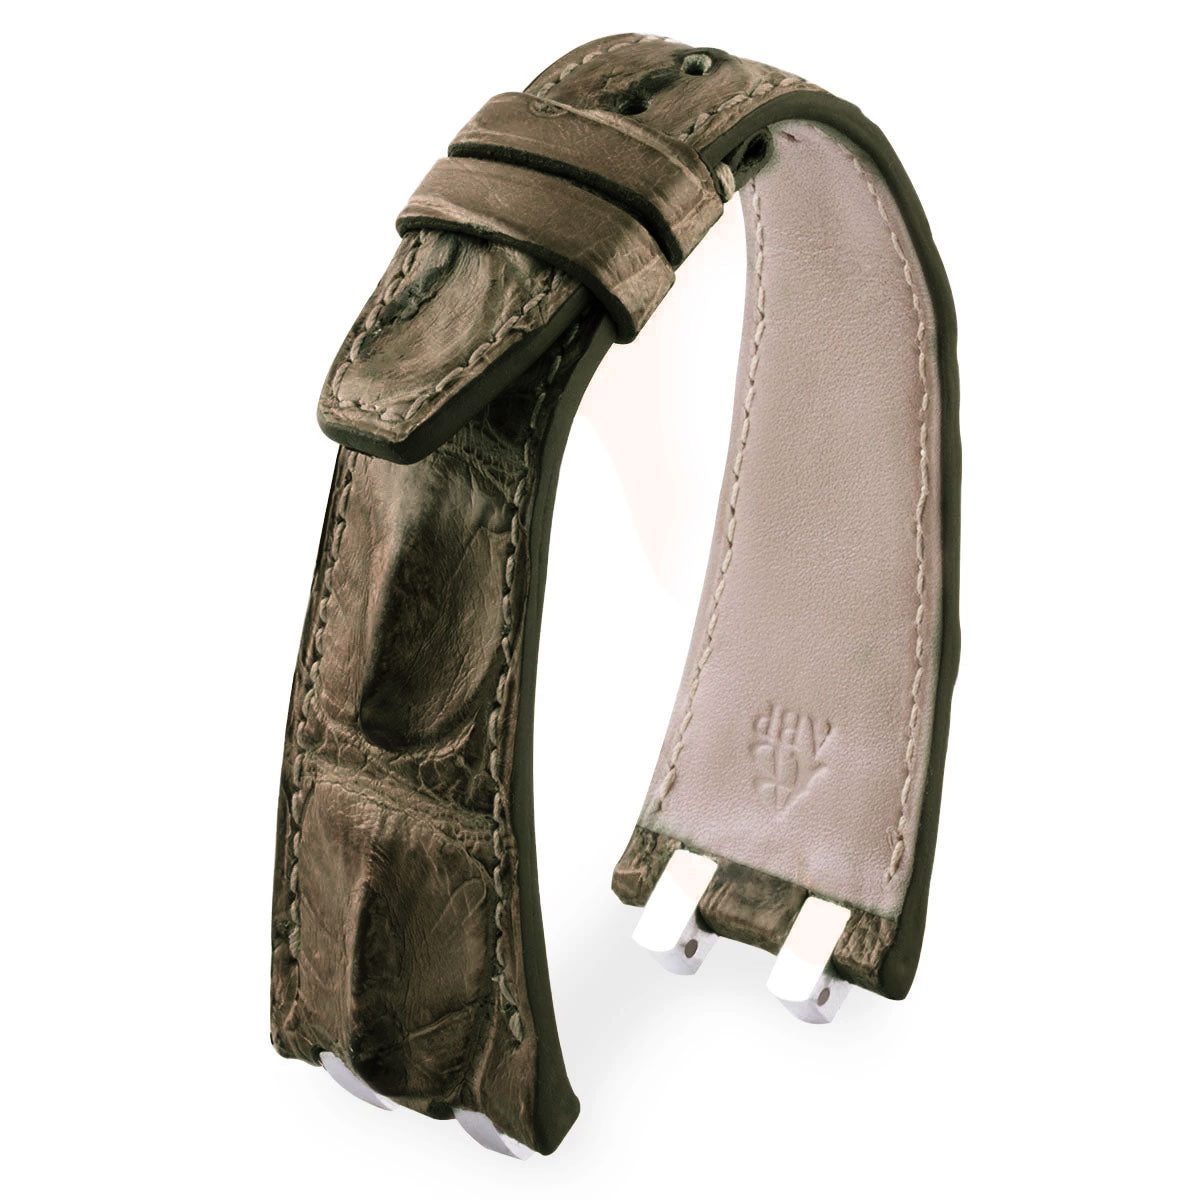 Audemars Piguet Royal Oak classique / Offshore / Vintage - Bracelet-montre cuir - Alligator corné ( noir / gris / beige / bleu... ) - watch band leather strap - ABP Concept -